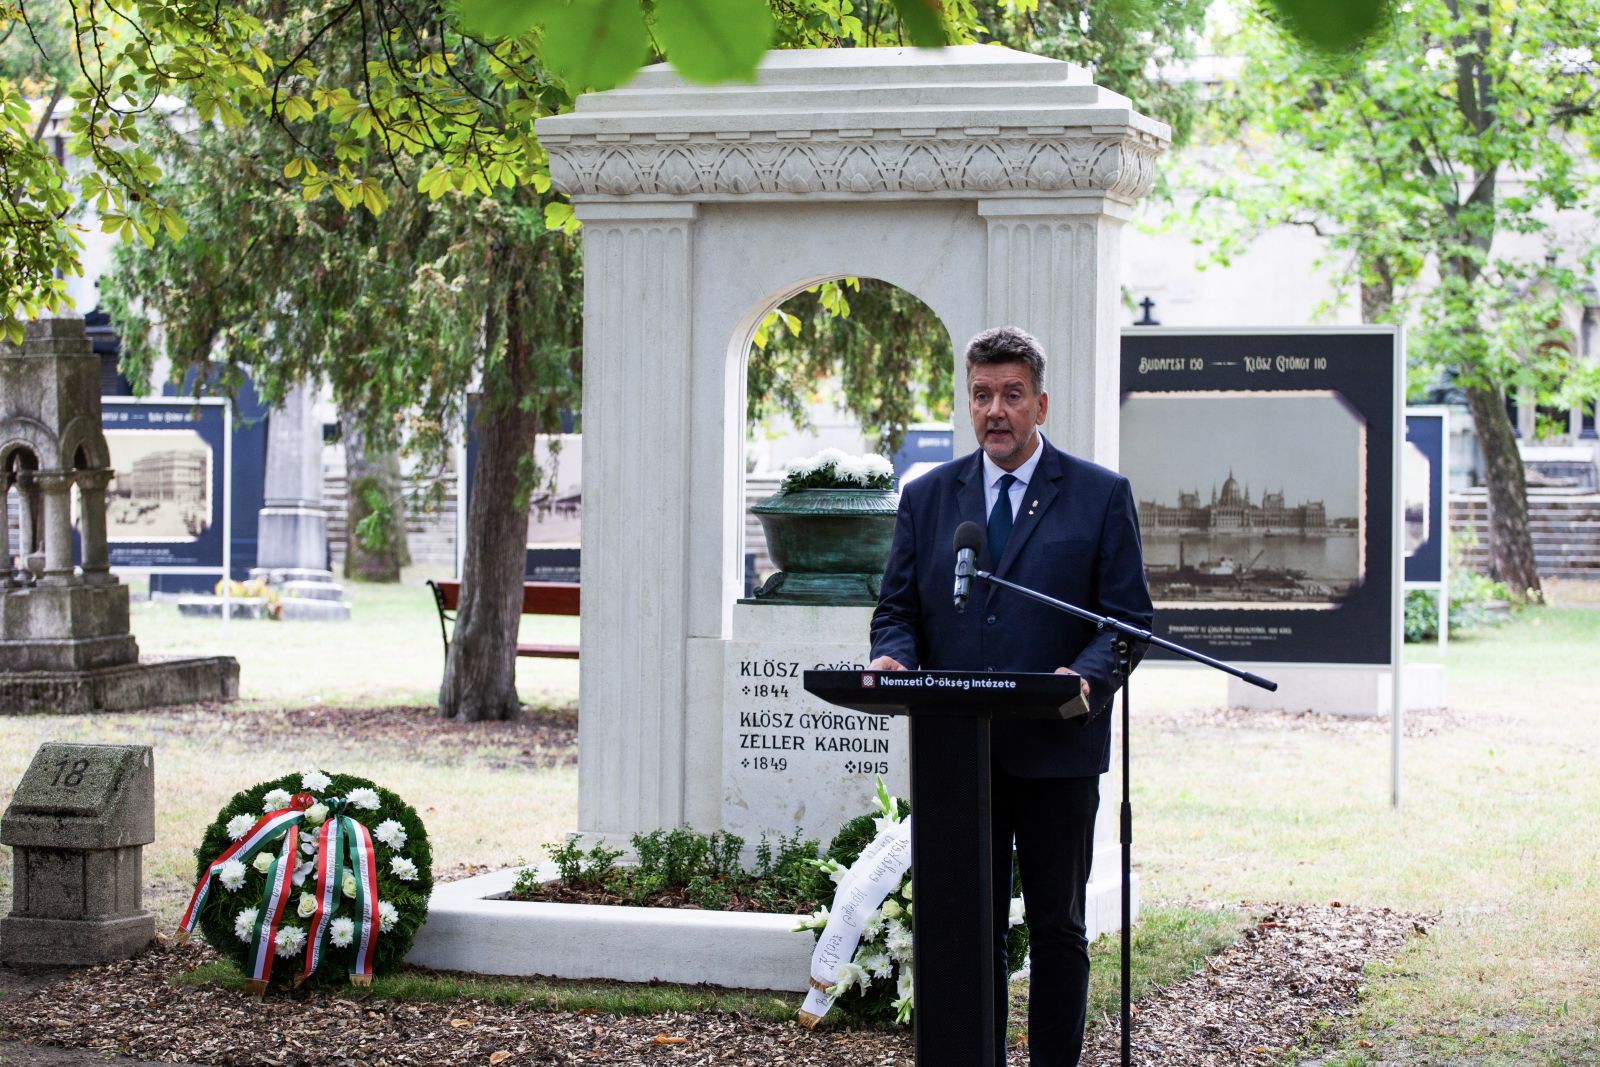 Megemlékezést tartottak Klösz György halálának 110. évfordulója alkalmából a Fiumei úti sírkertben